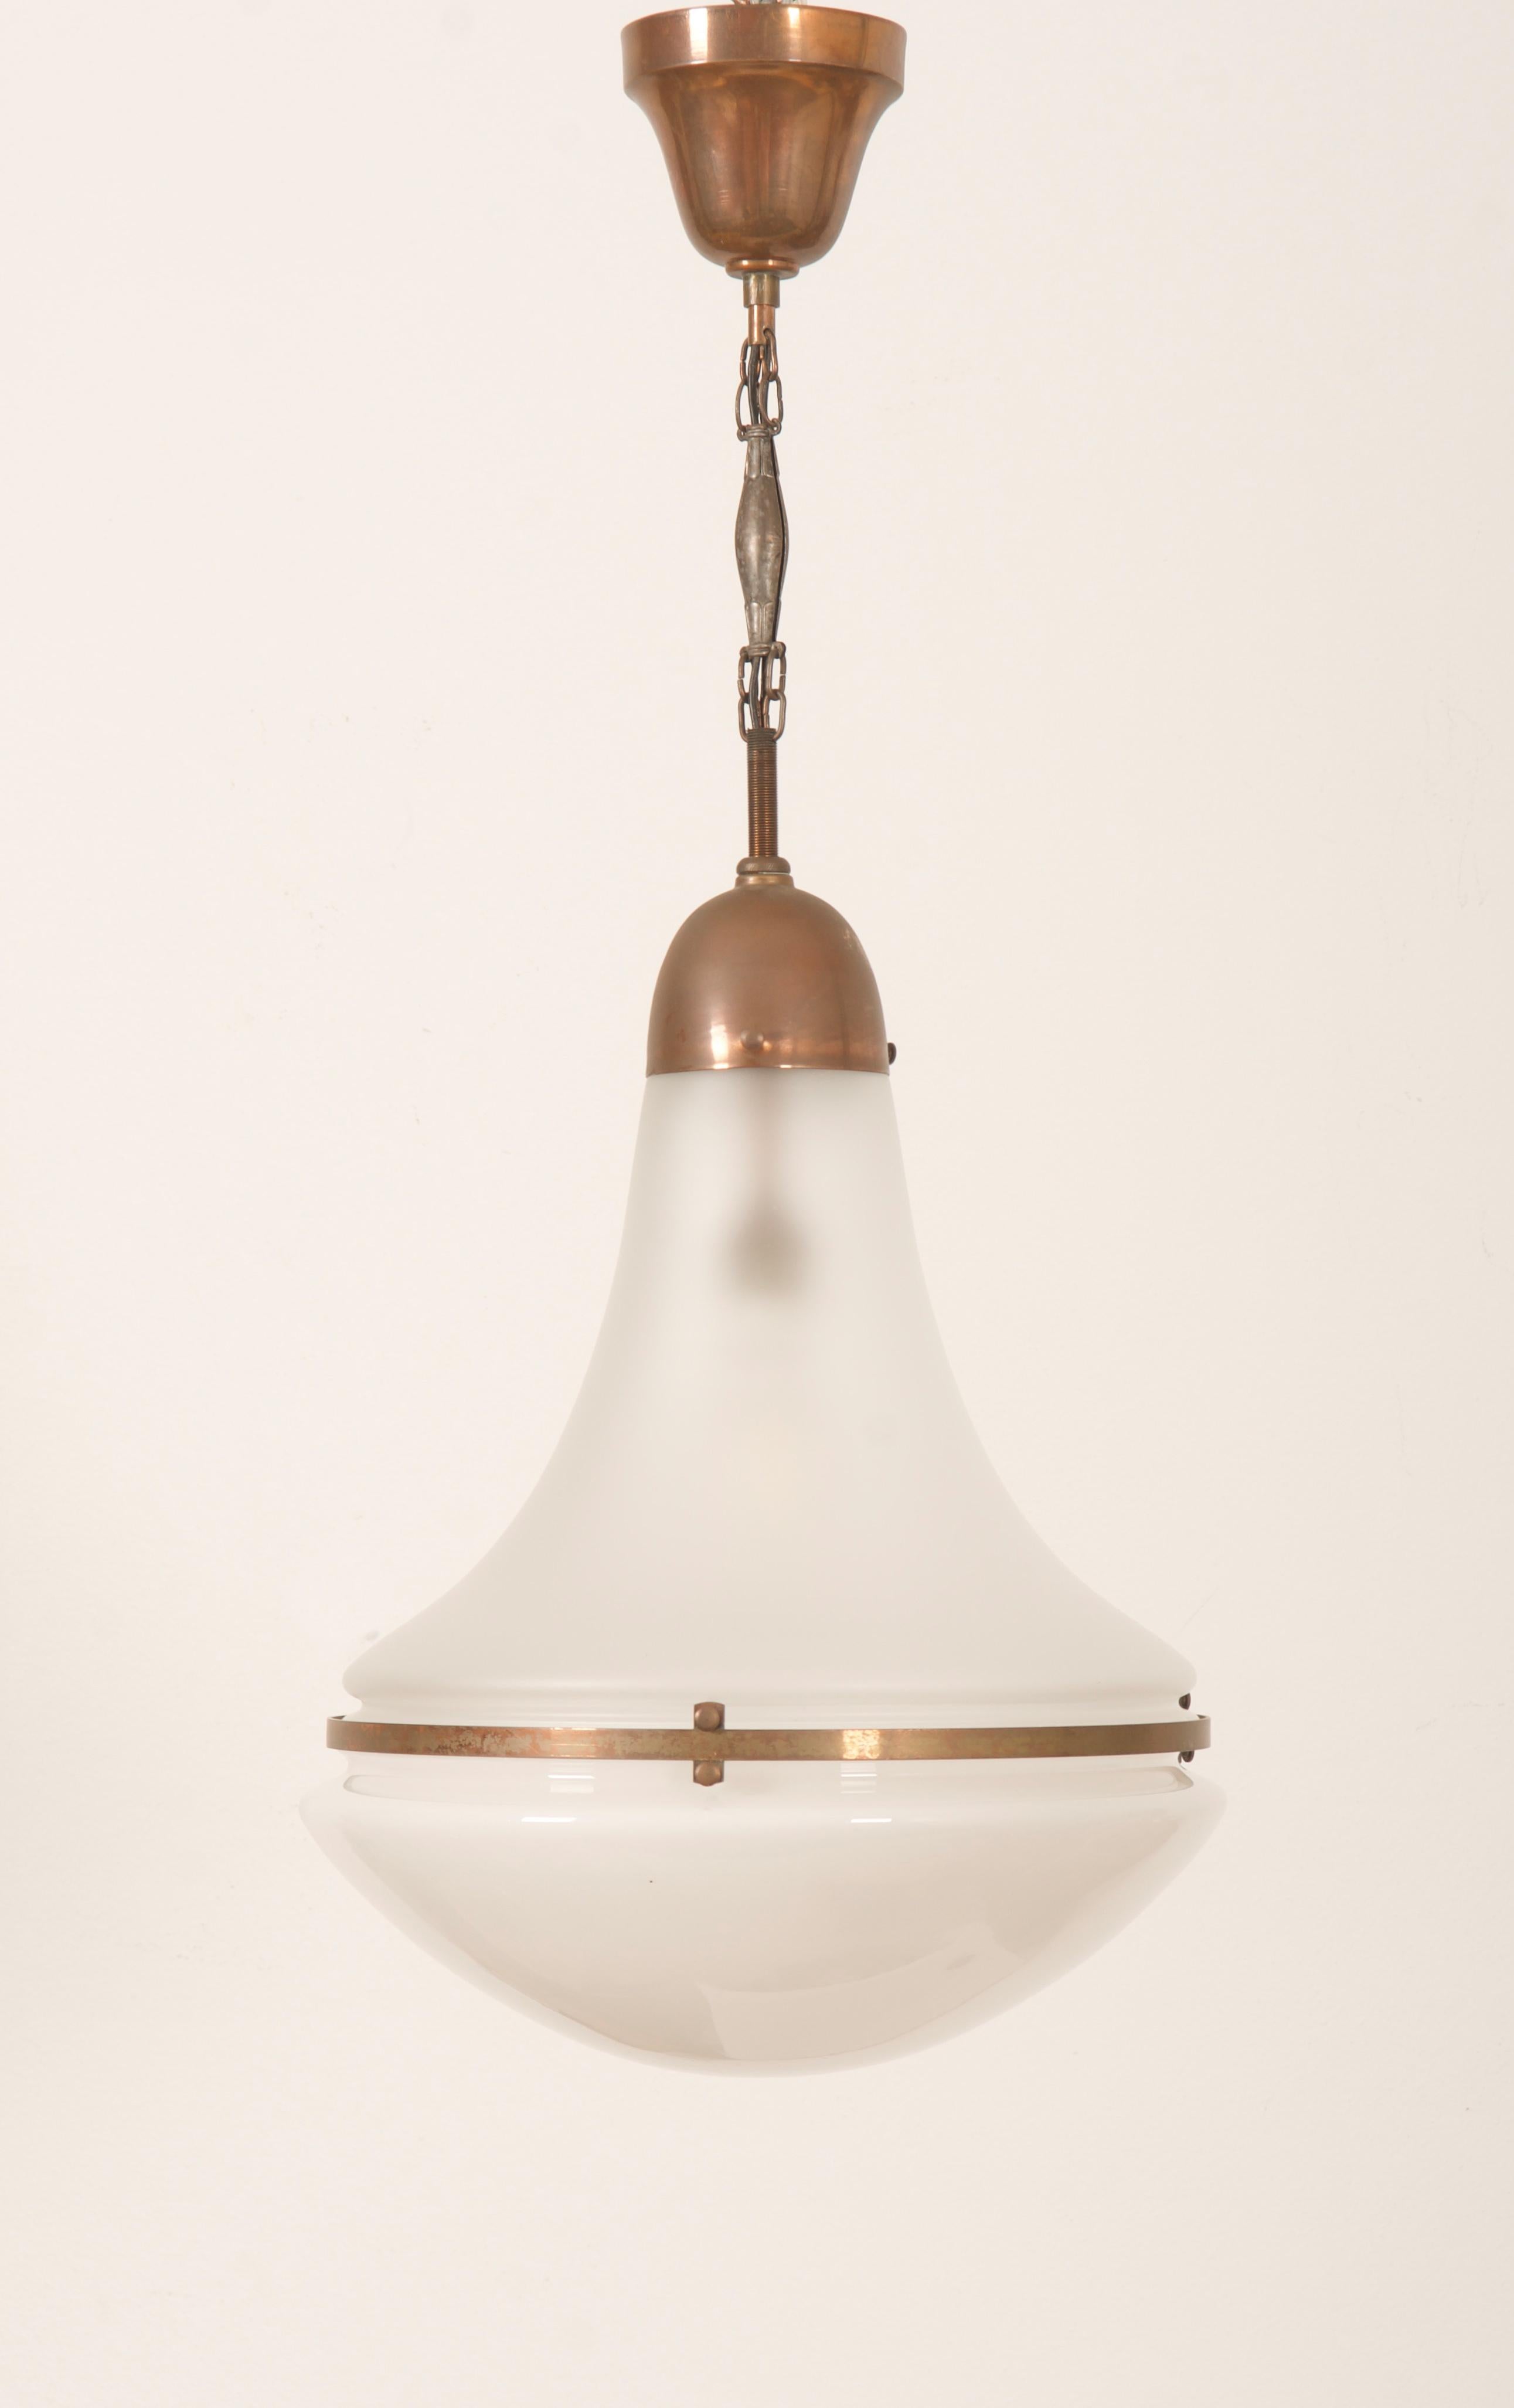 Lampe pendante Luzette de Peter Behrens de 1910-1920, monture en vieux cuivre et verre opalin/satiné.
Belle et parfaite condition d'origine avec douille E27.
 